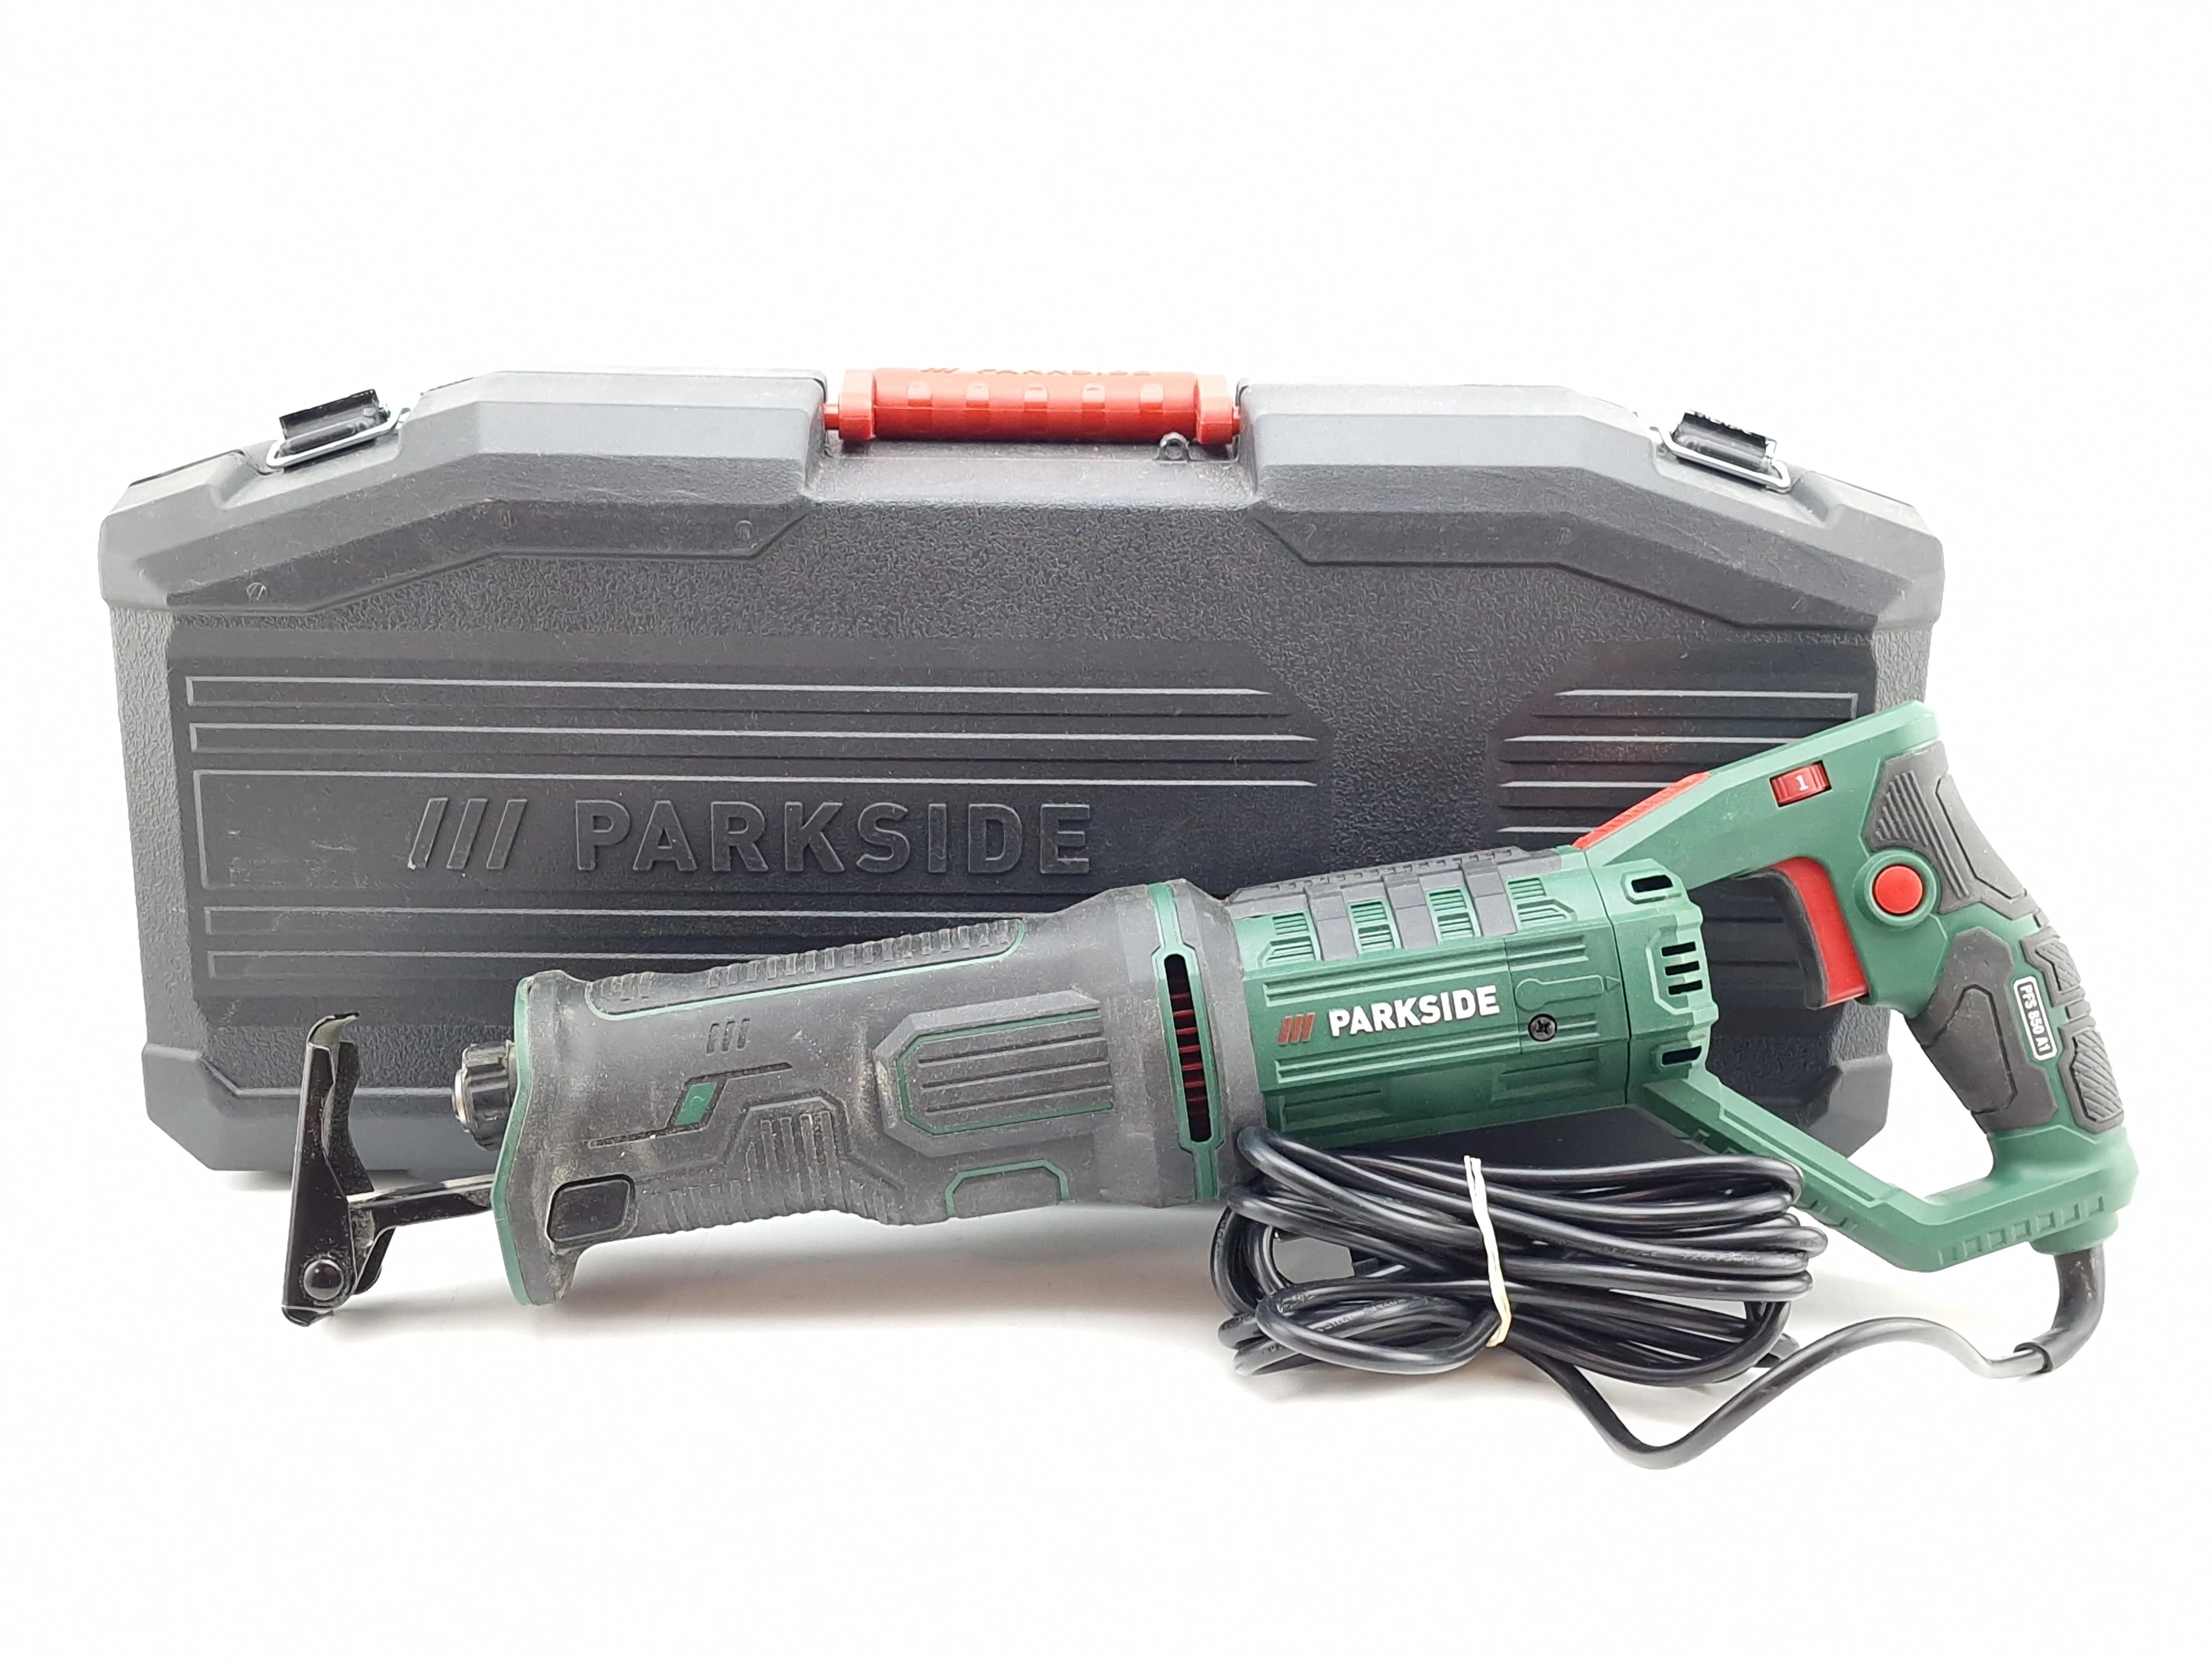 PARKSIDE® Scie sabre PFS 850 A1, 850 W